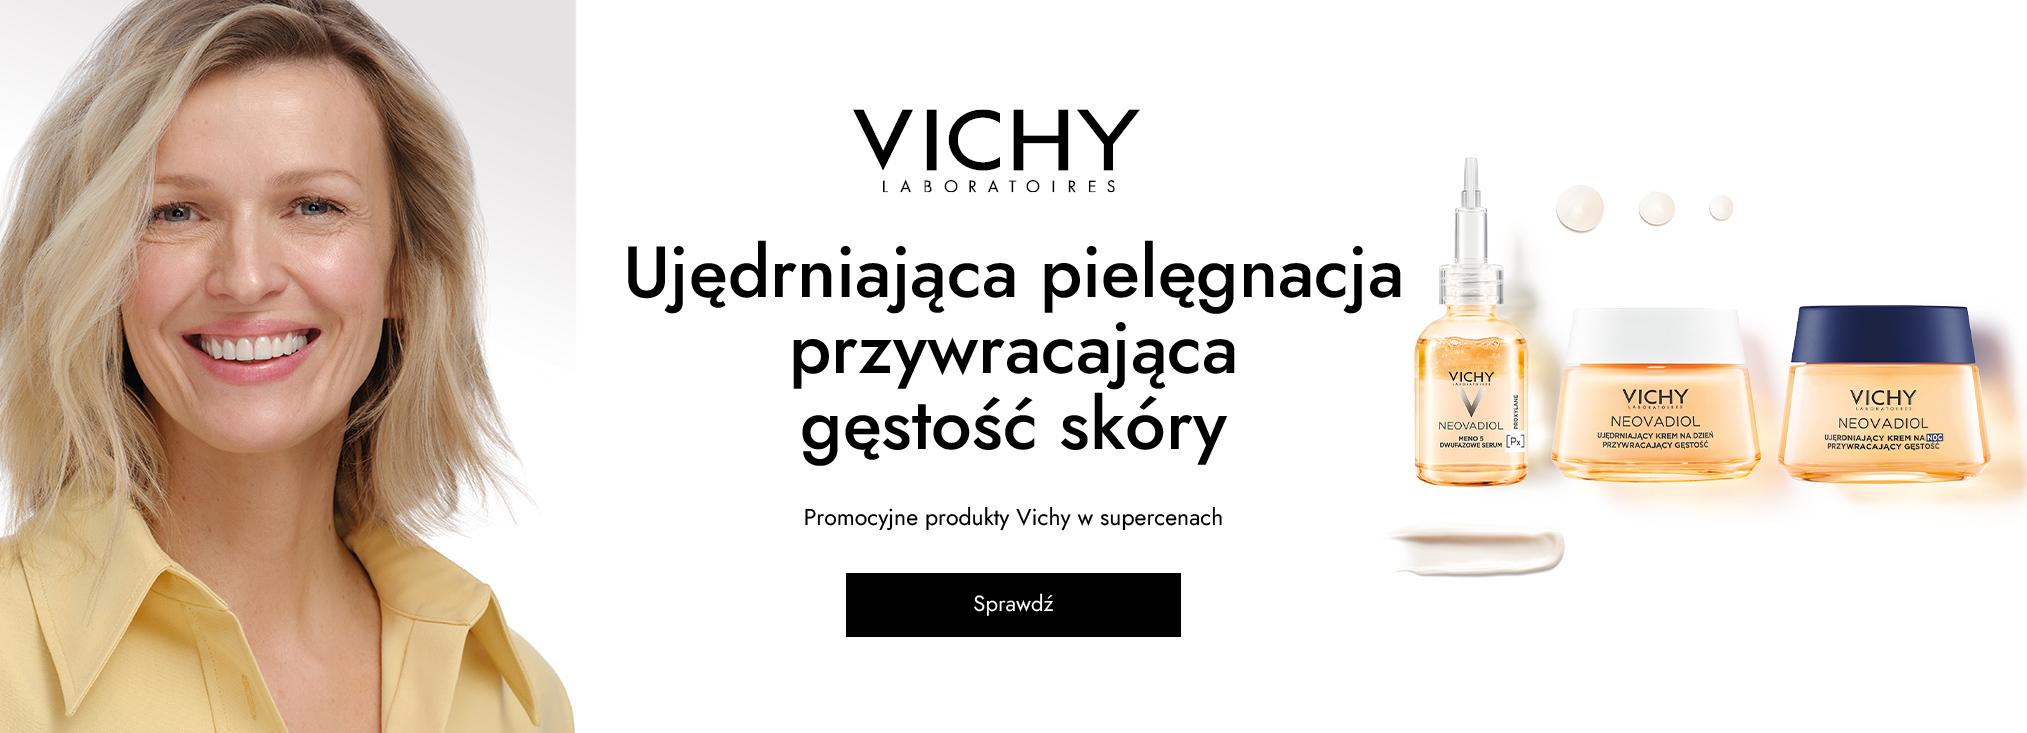 Vichy_Dermocosmetics